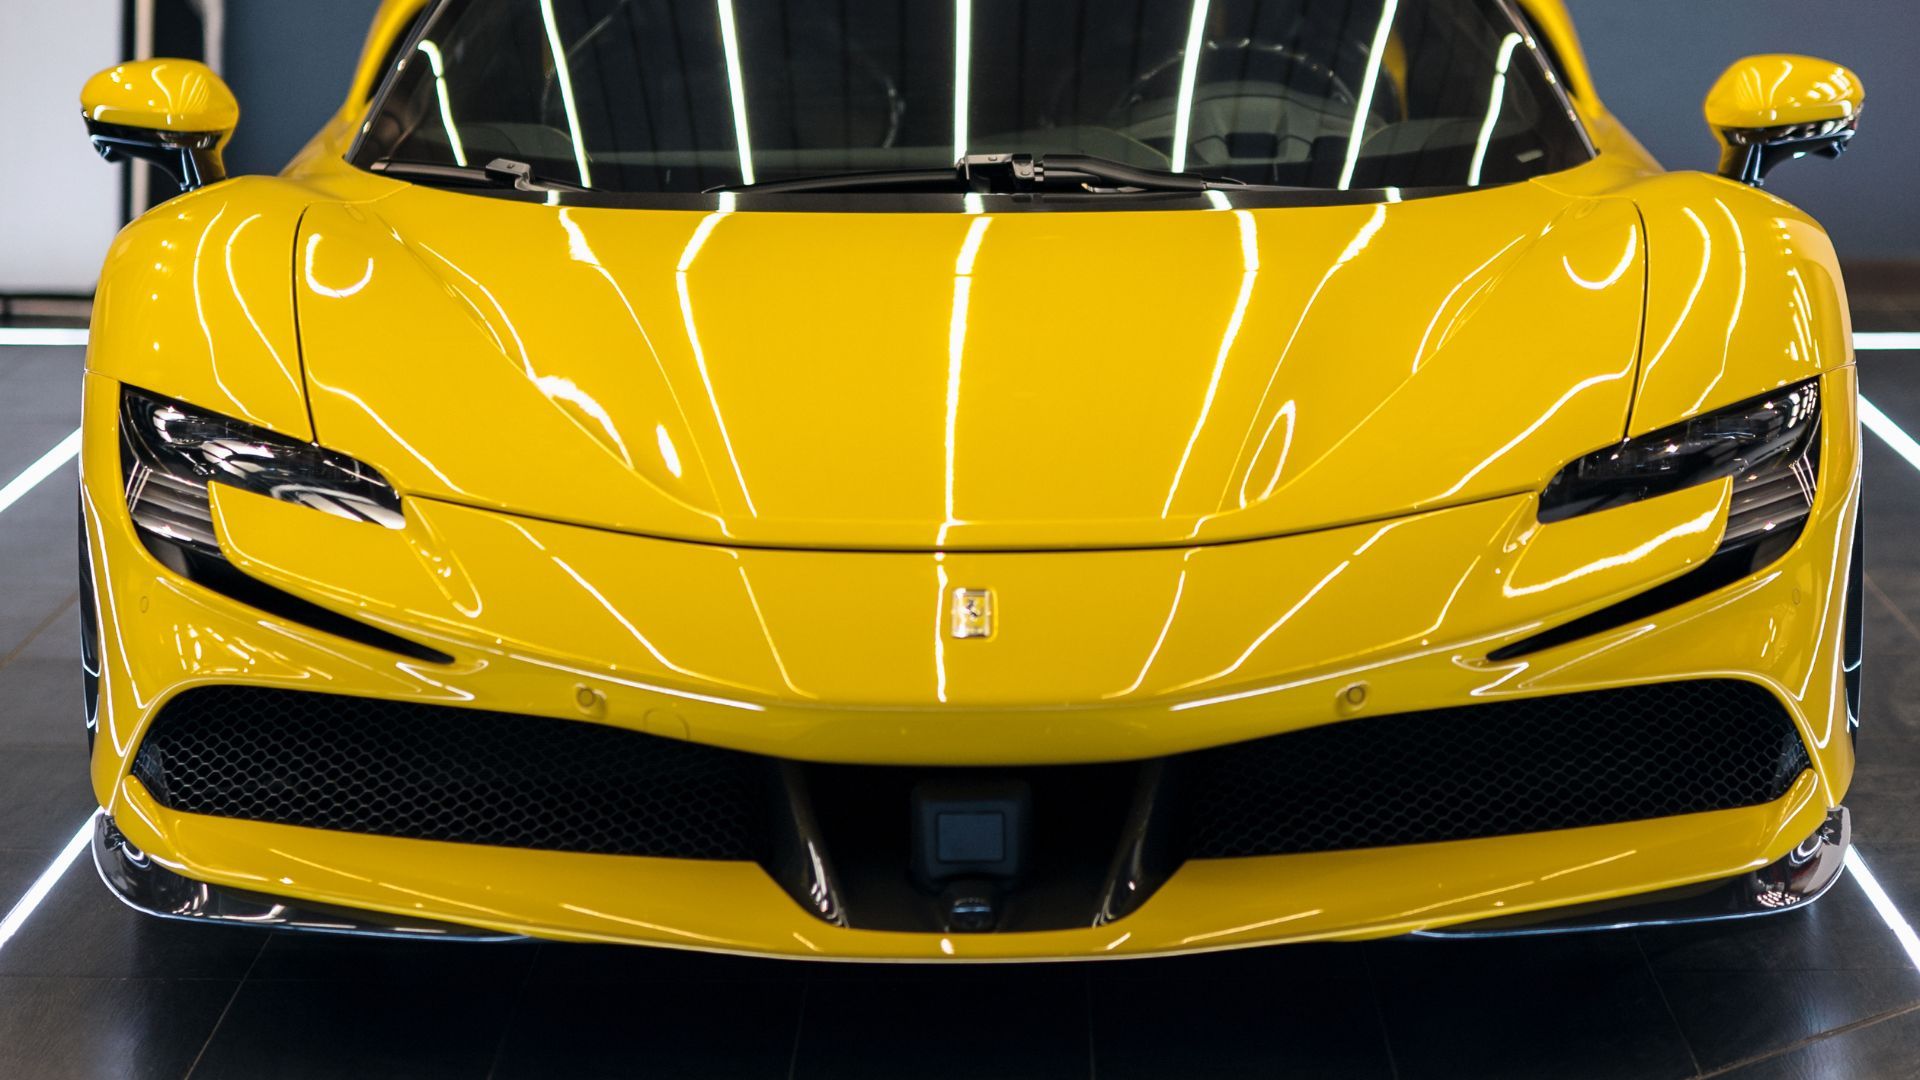 shiny yellow sports car